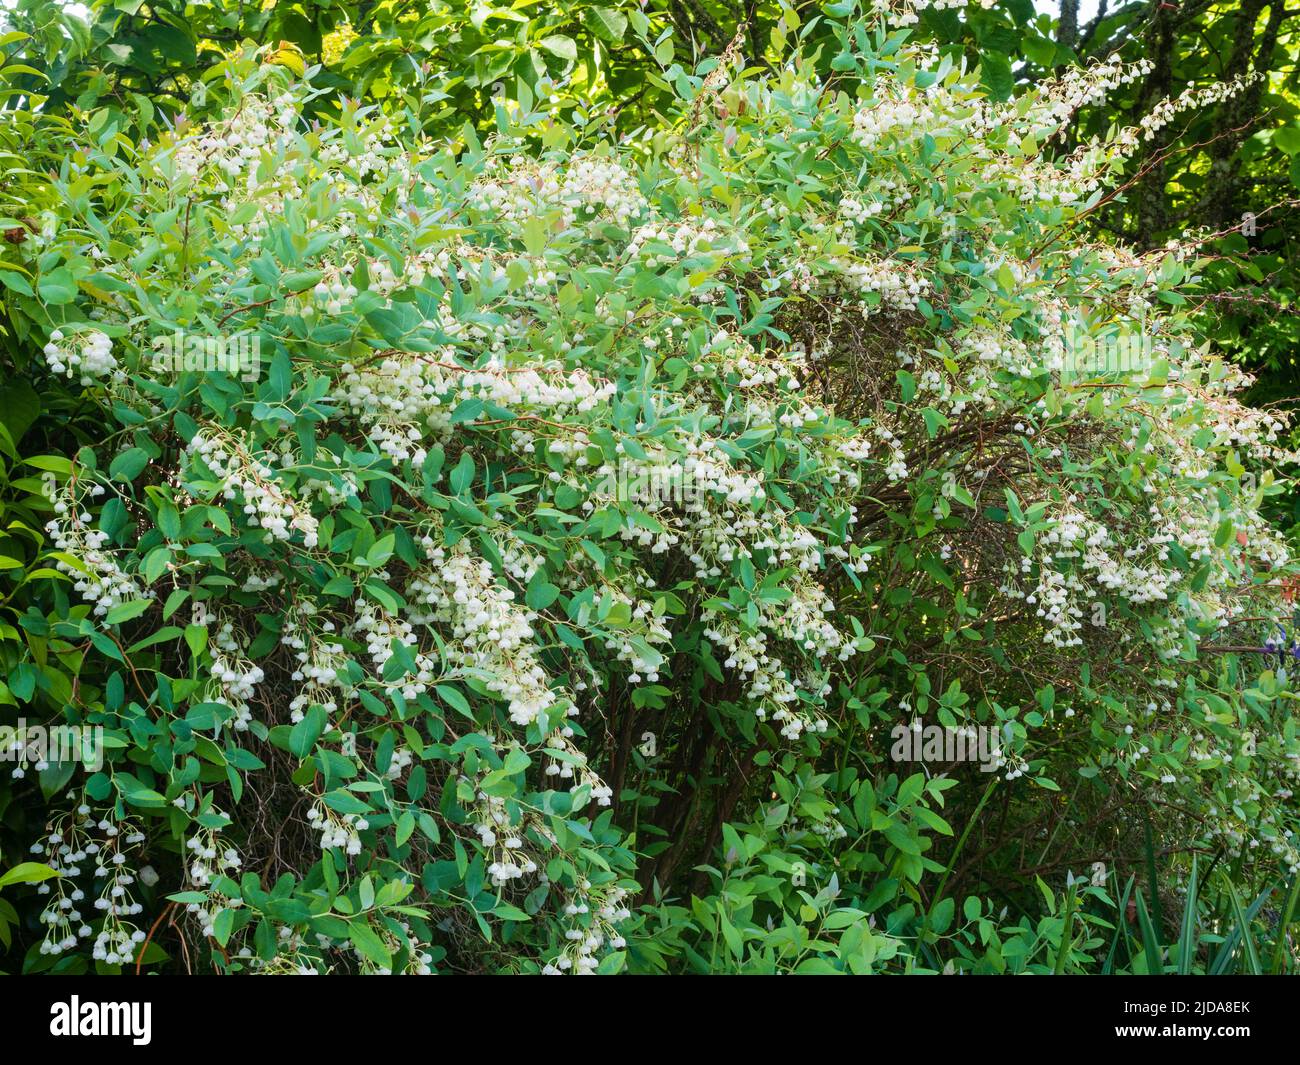 Cascadas de principios de verano de flores blancas como la campana del arbusto frondoso y frondoso, Zenobia pulverulenta 'Blue Sky' Foto de stock